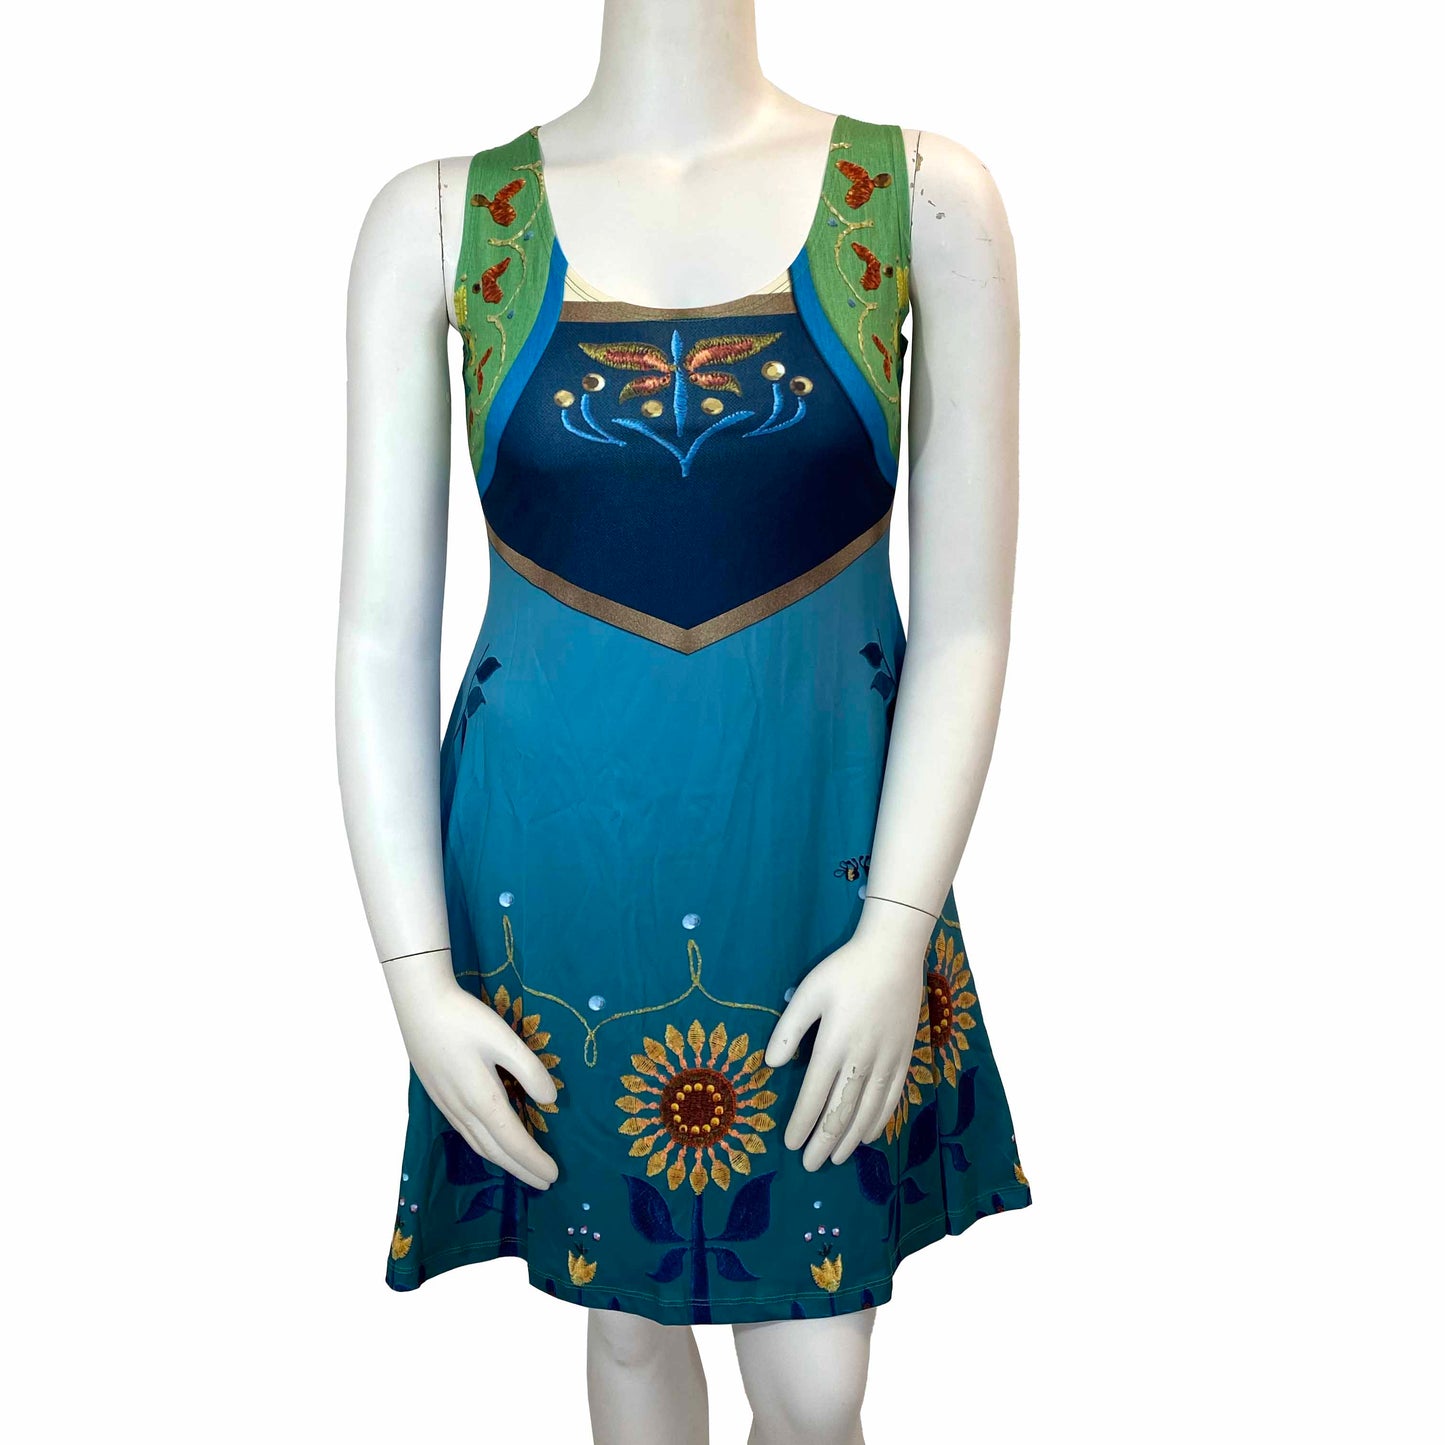 Anna Fever Inspired Sleeveless Dress